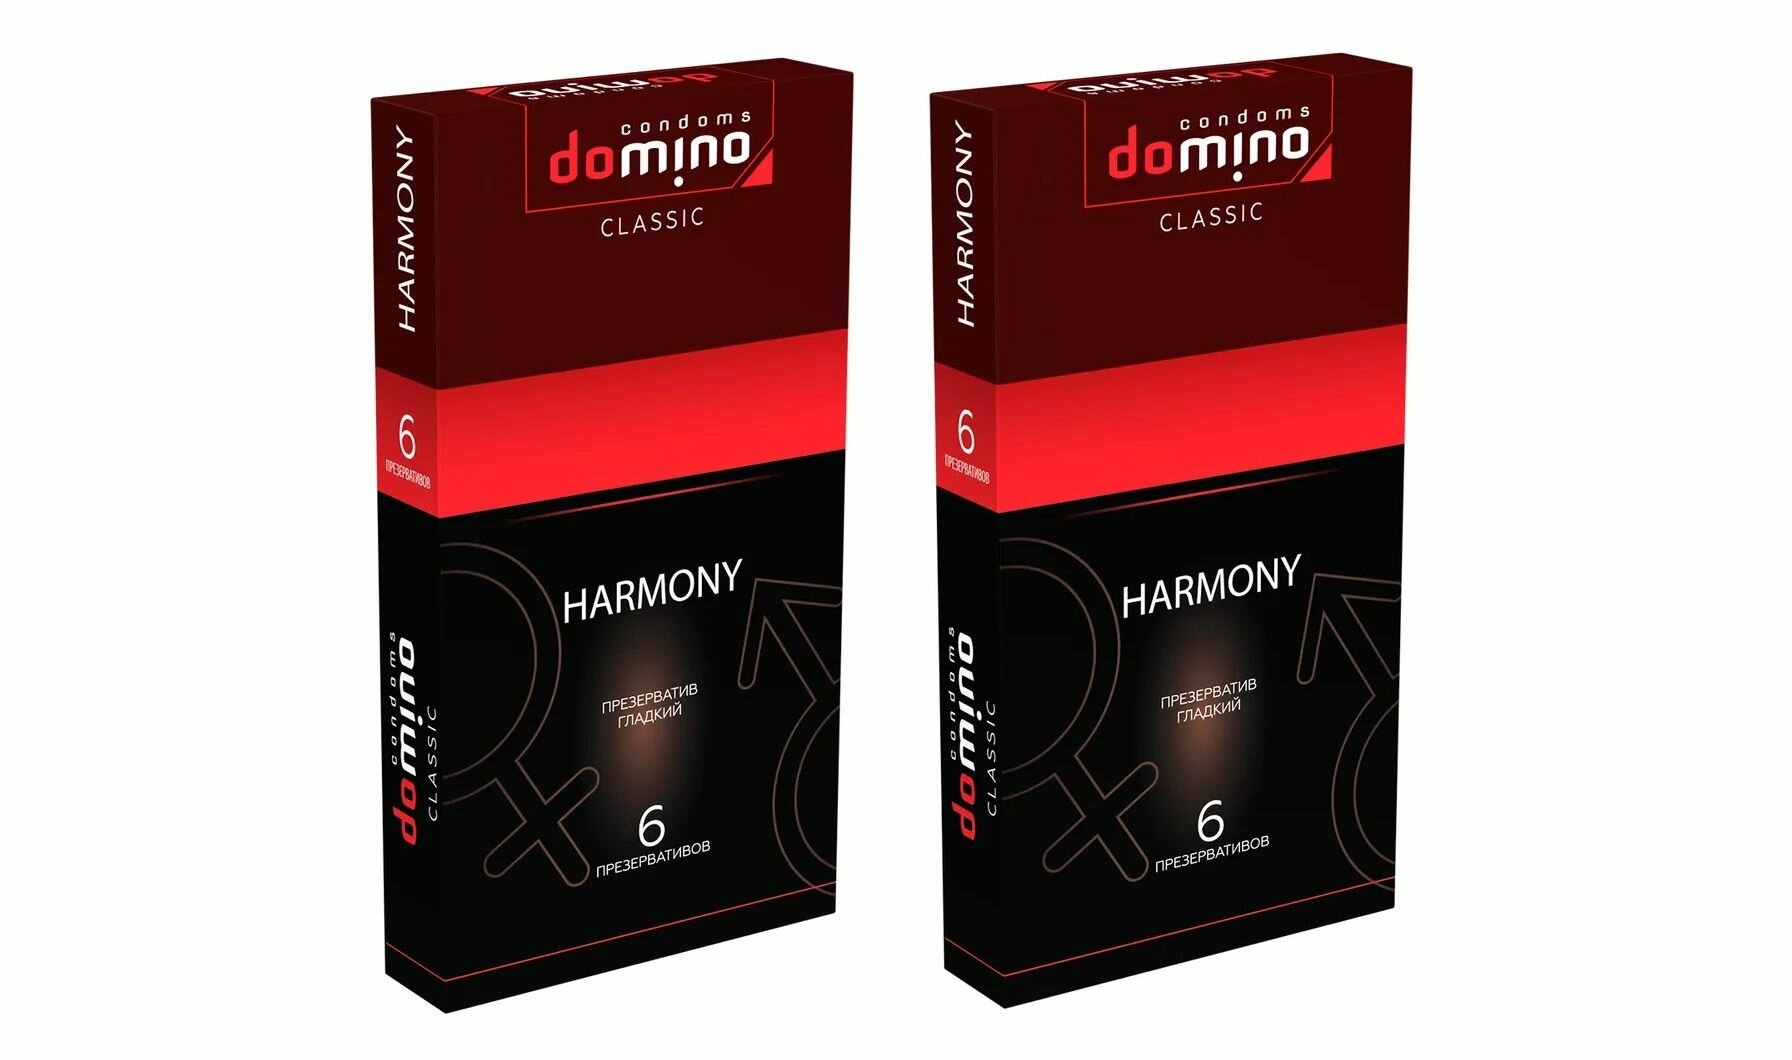 Domino Презервативы "Classic Harmony", 6 штук, 2 упаковки